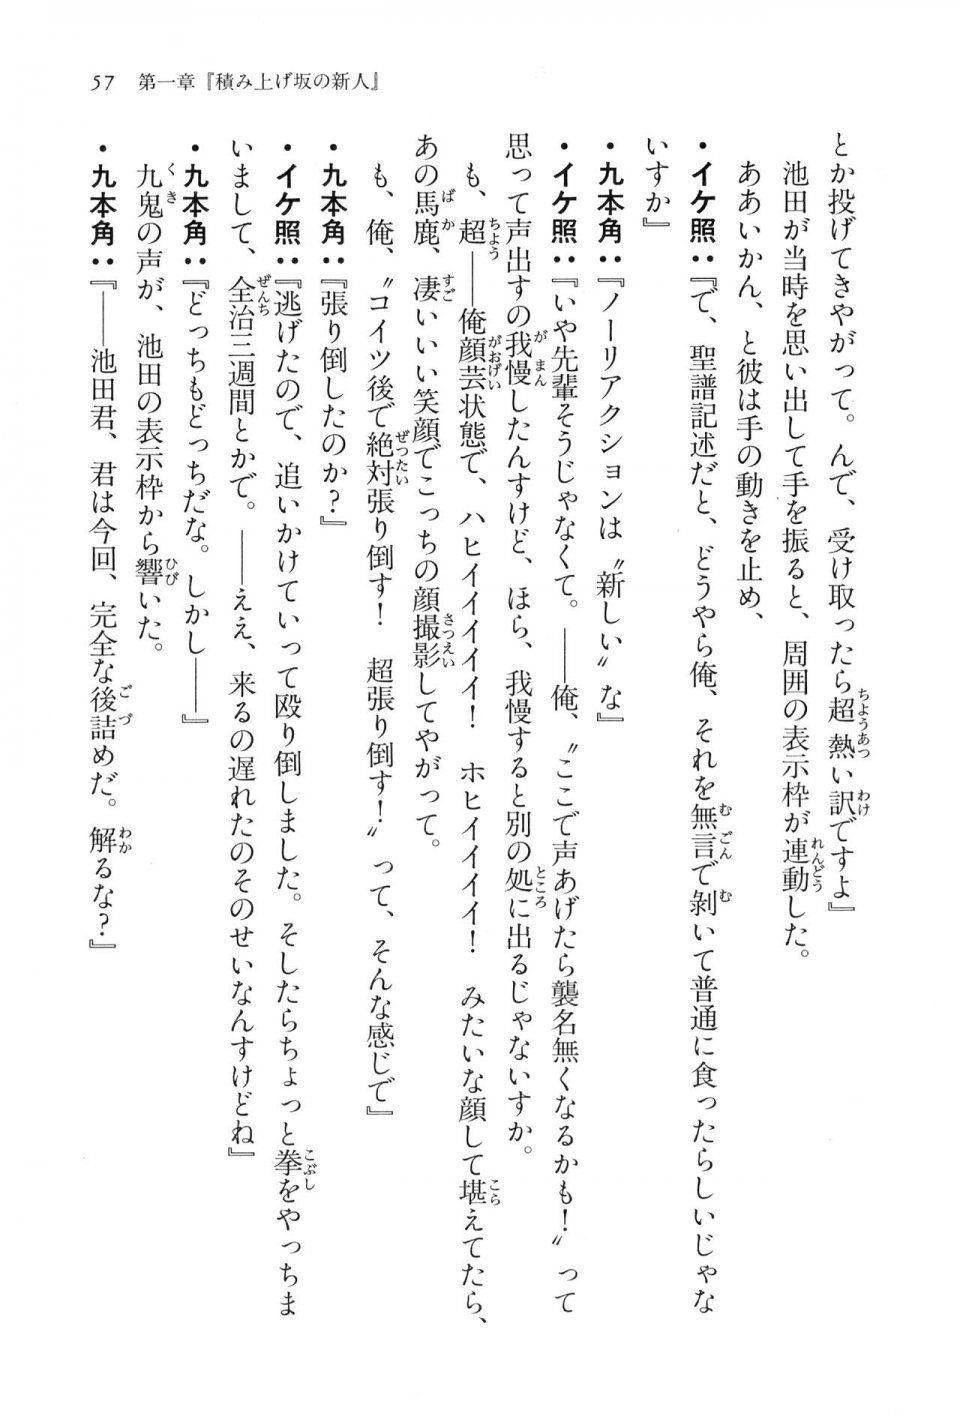 Kyoukai Senjou no Horizon LN Vol 16(7A) - Photo #57